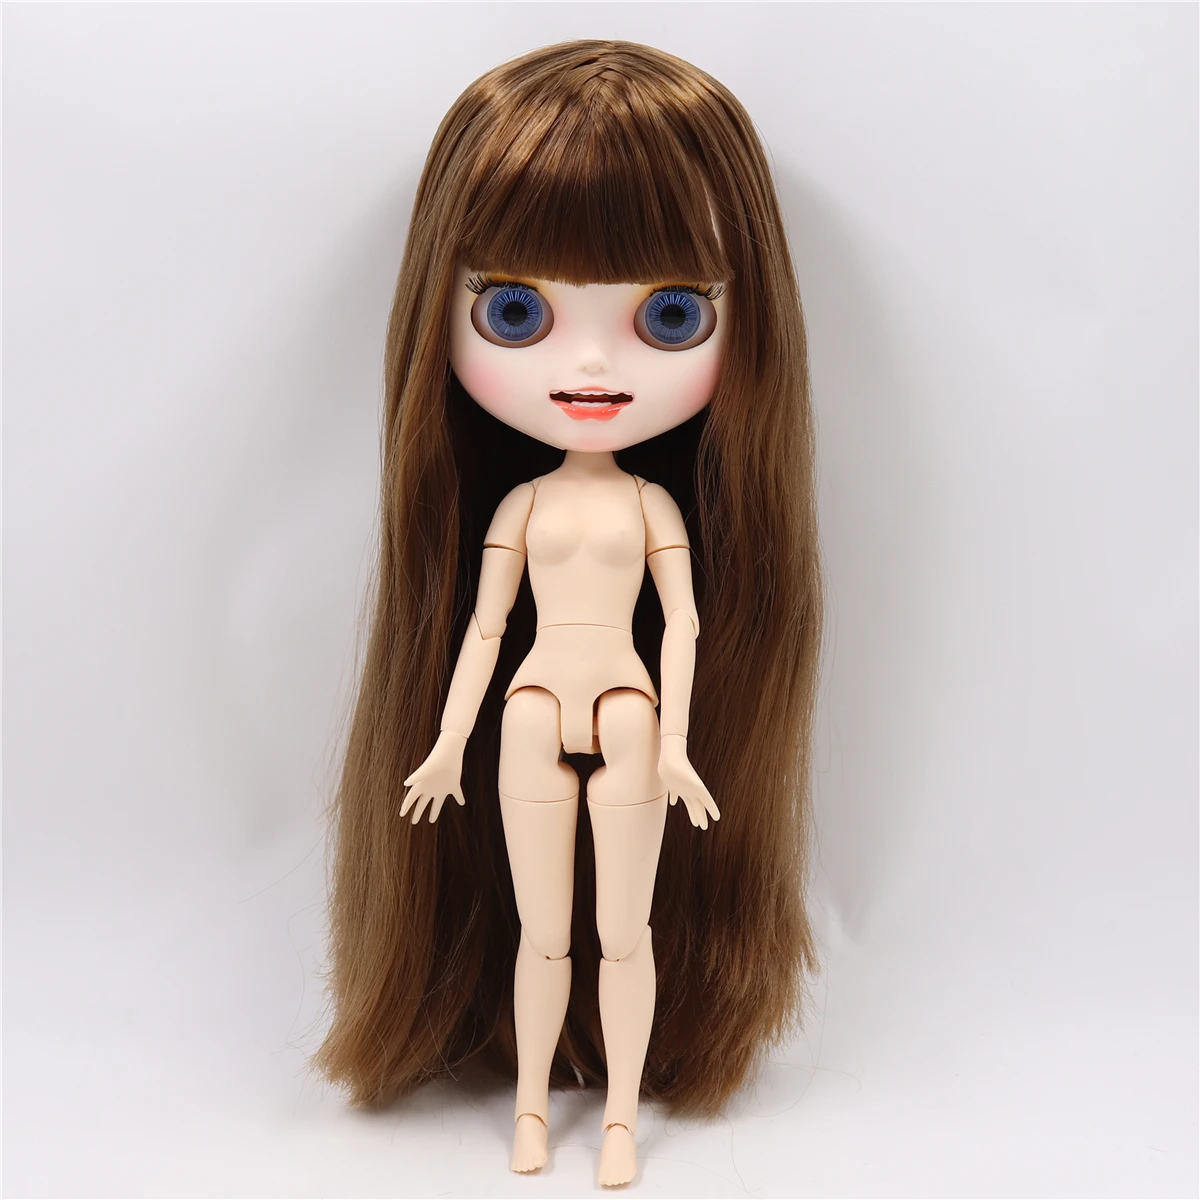 ICY factory шарнирная кукла blyth joint body белая кожа пользовательская кукла заказное лицо матовое лицо с зубами 30 см игрушка